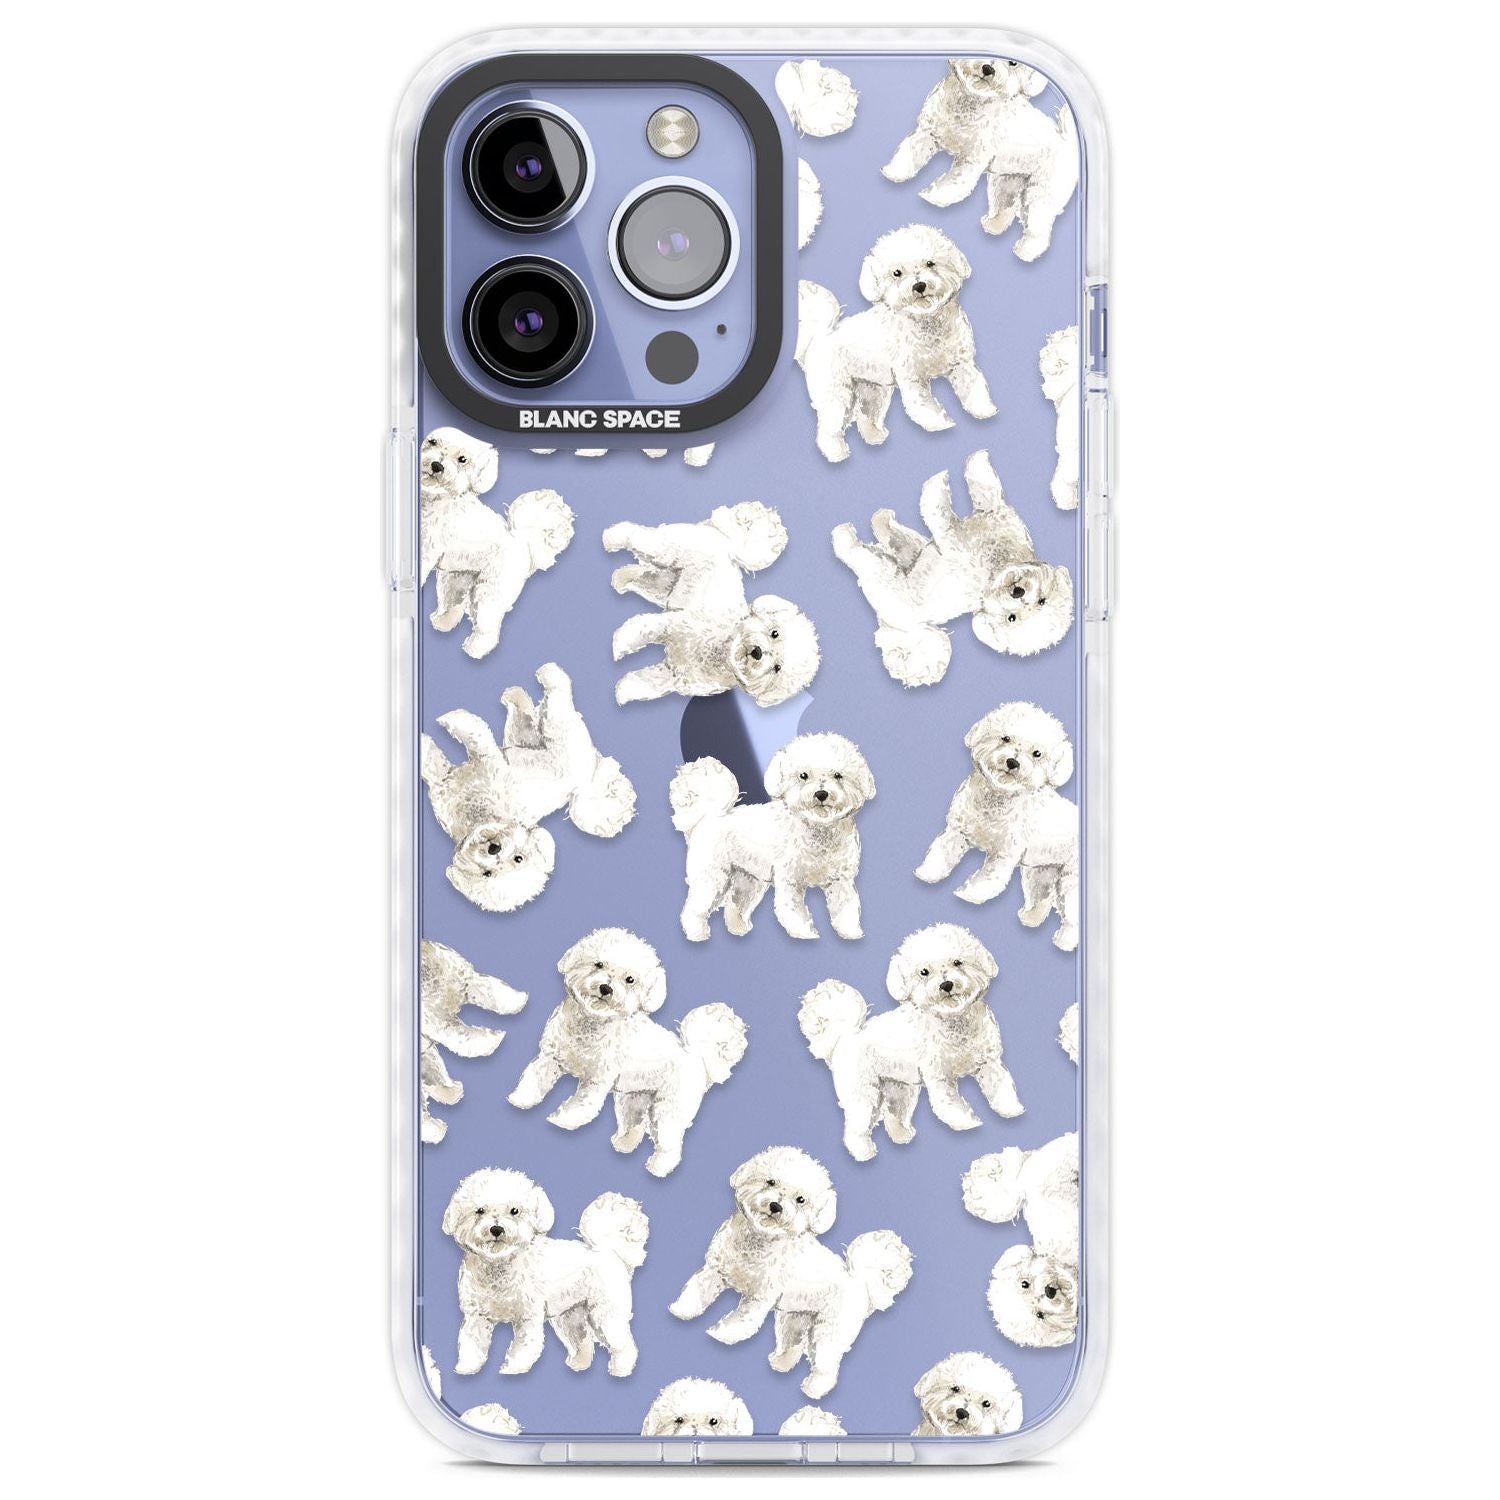 Bichon Frise Watercolour Dog Pattern Phone Case iPhone 13 Pro Max / Impact Case,iPhone 14 Pro Max / Impact Case Blanc Space